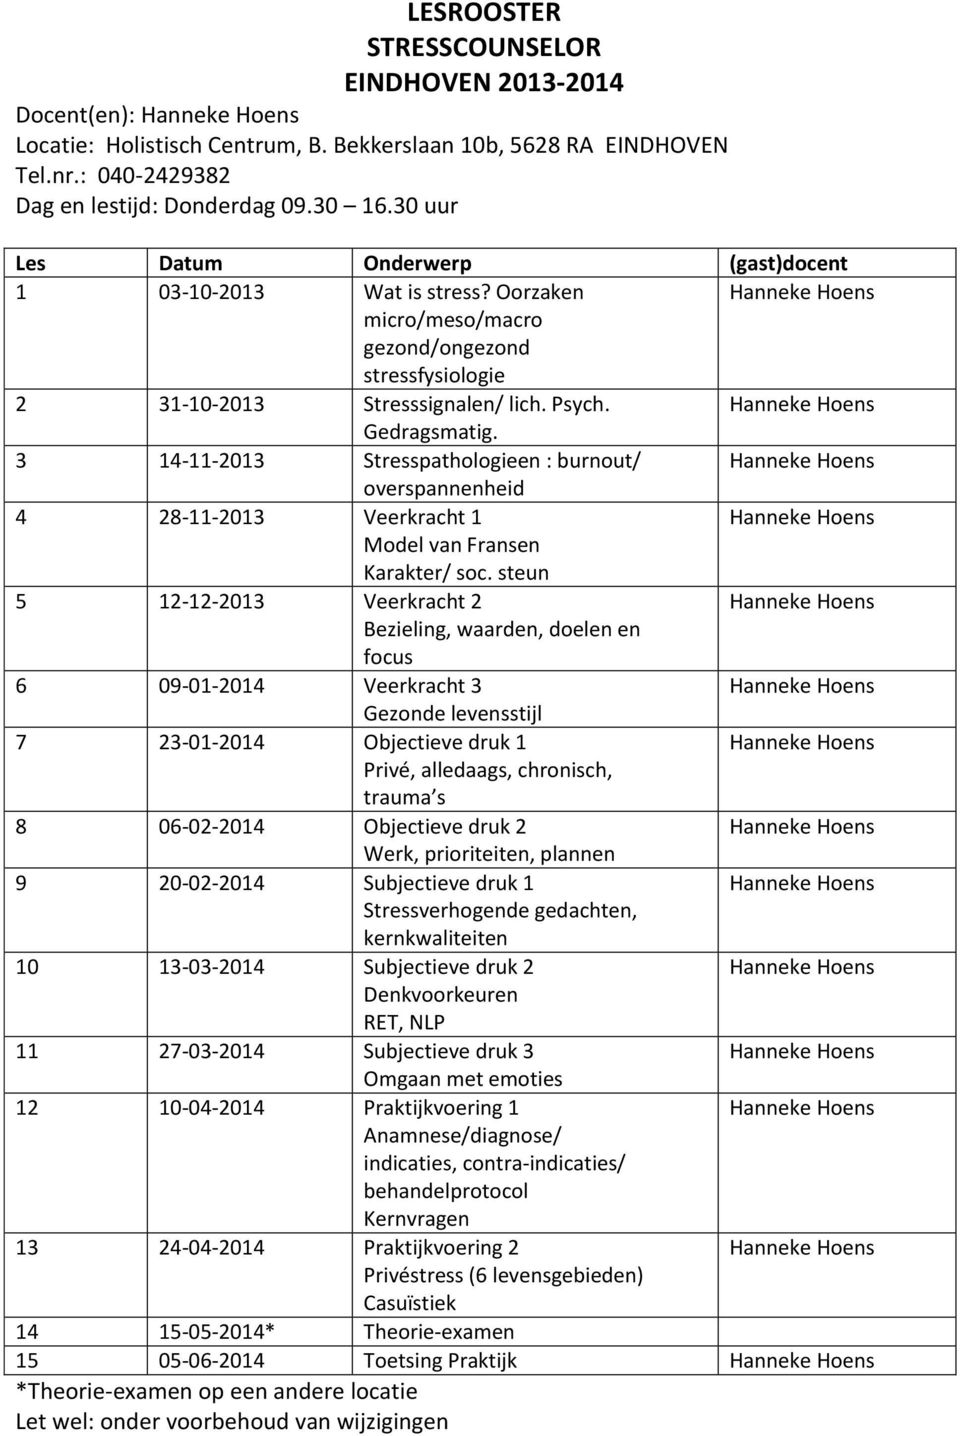 3 14-11-2013 Stresspathologieen : burnout/ 4 28-11-2013 Veerkracht 1 5 12-12-2013 Veerkracht 2 6 09-01-2014 Veerkracht 3 7 23-01-2014 Objectieve druk 1 8 06-02-2014